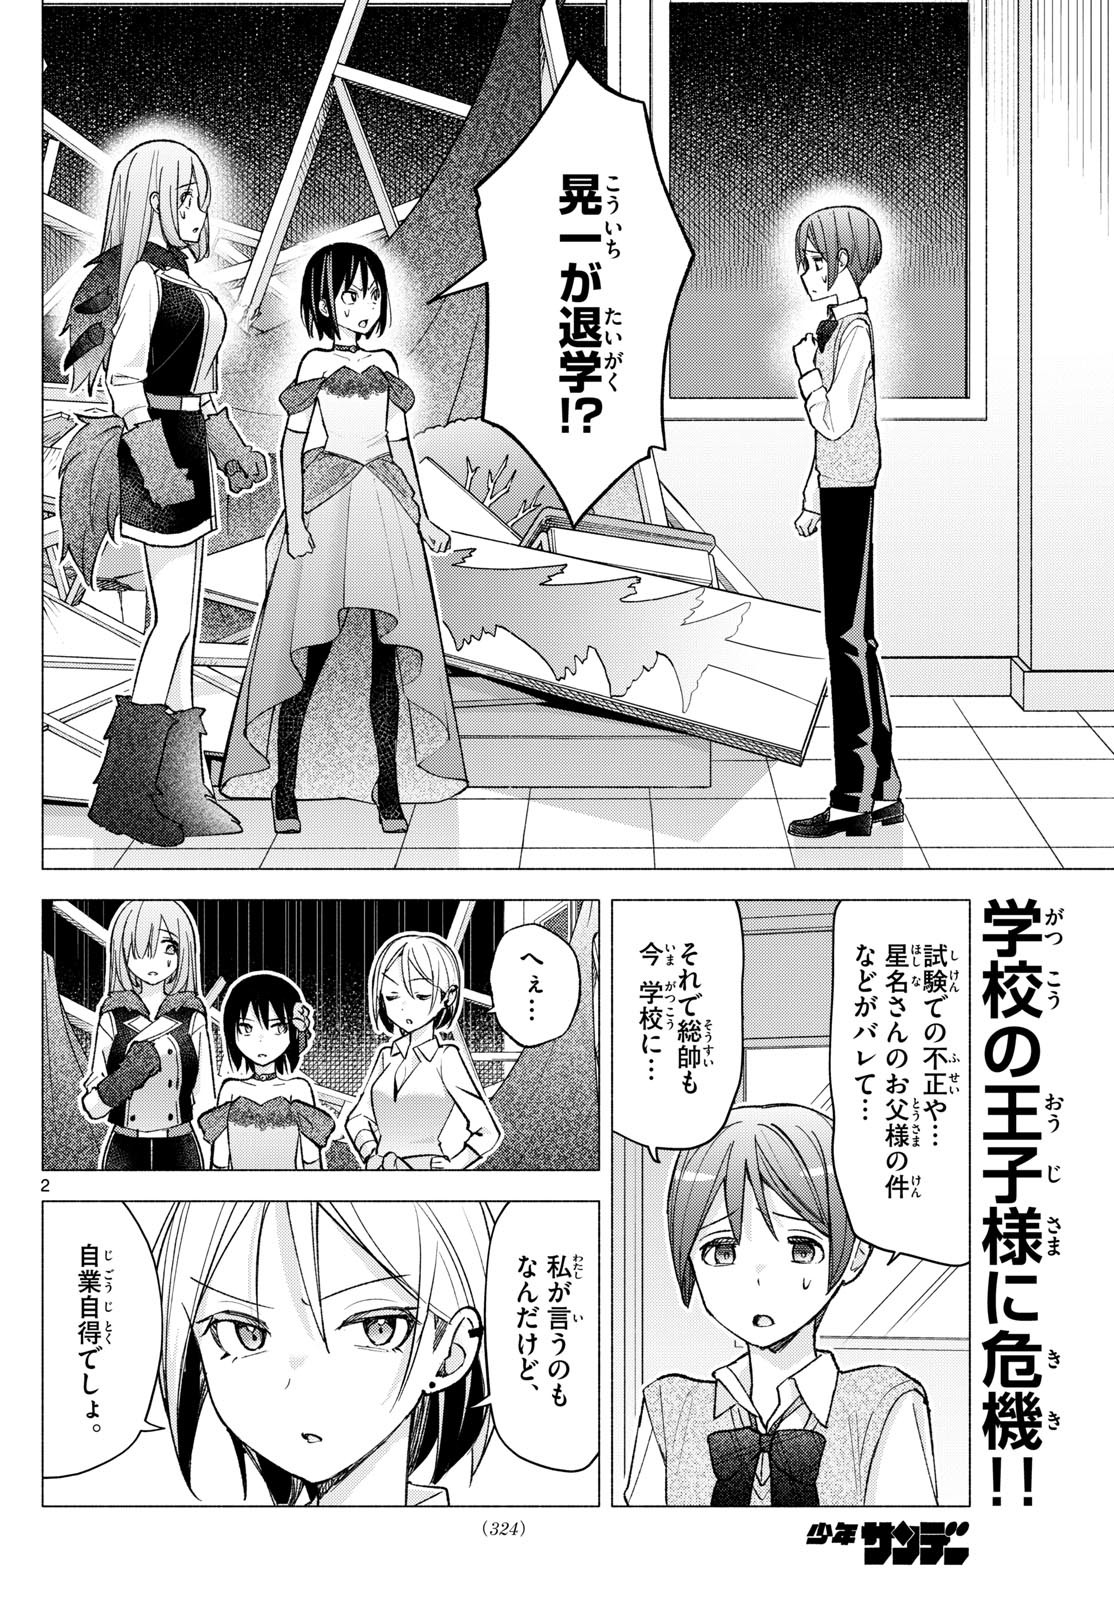 Kimi to Warui Koto ga Shitai - Chapter 065 - Page 2